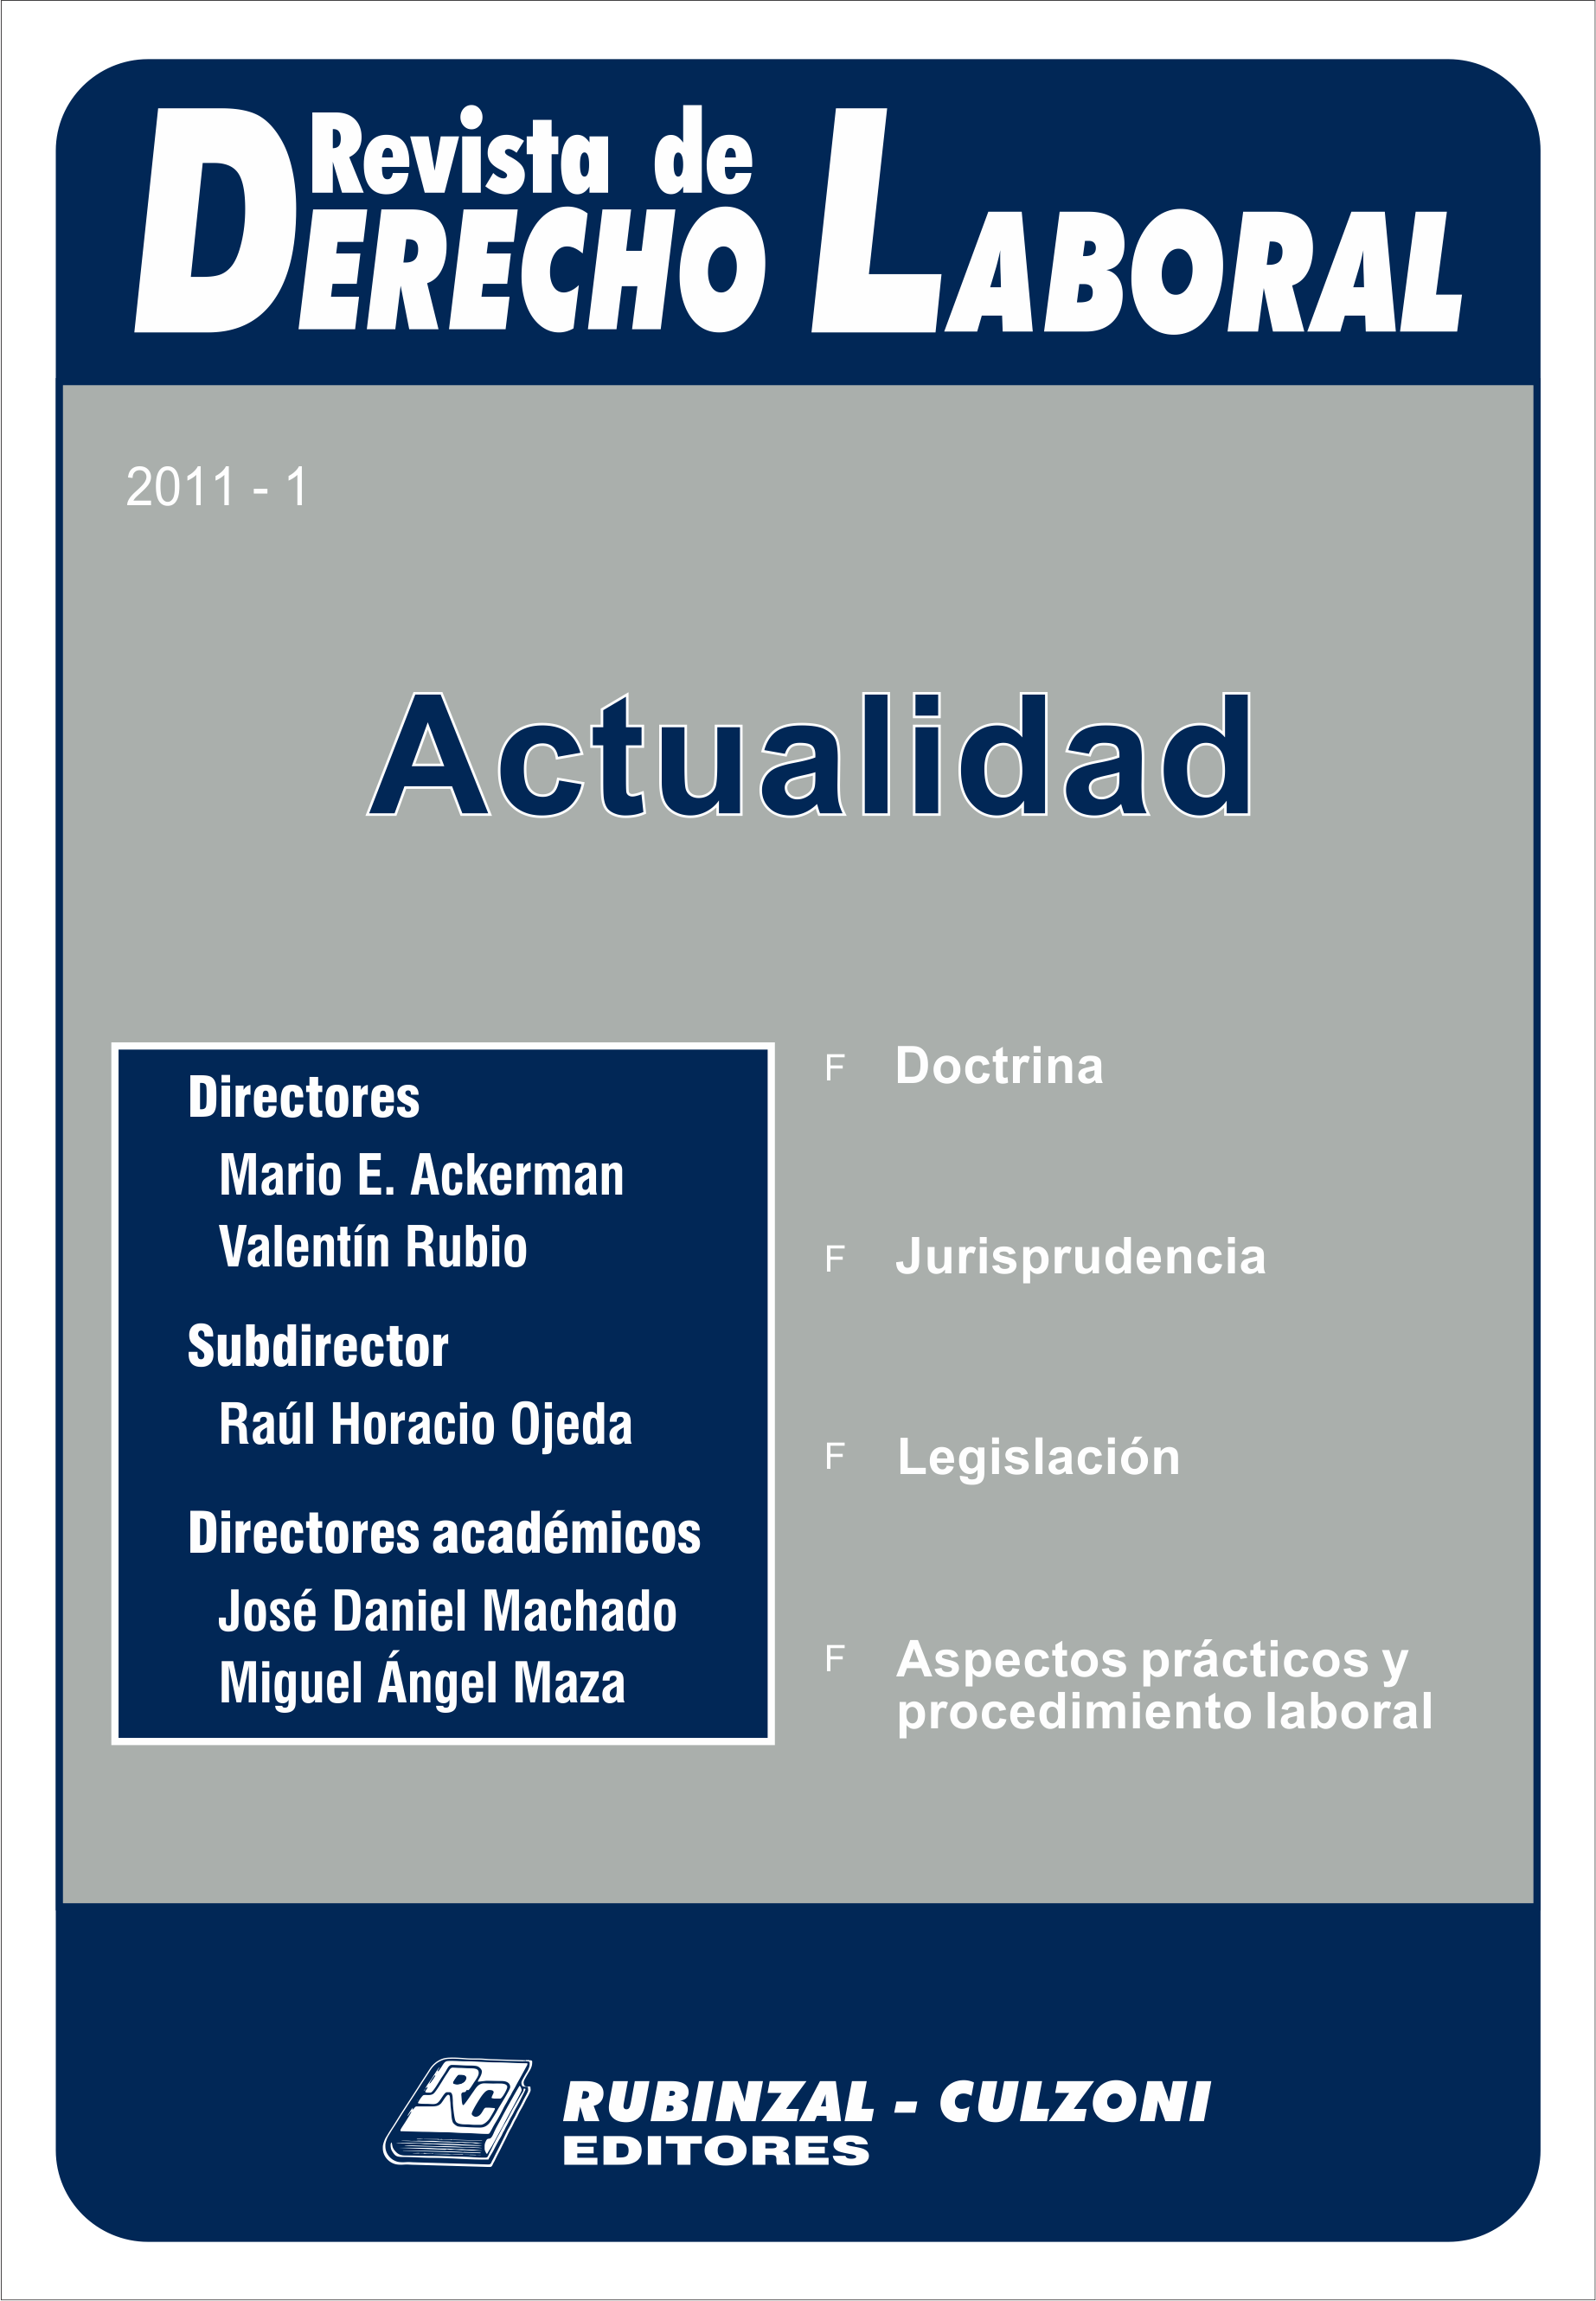 Revista de Derecho Laboral Actualidad - Año 2011 - 1.